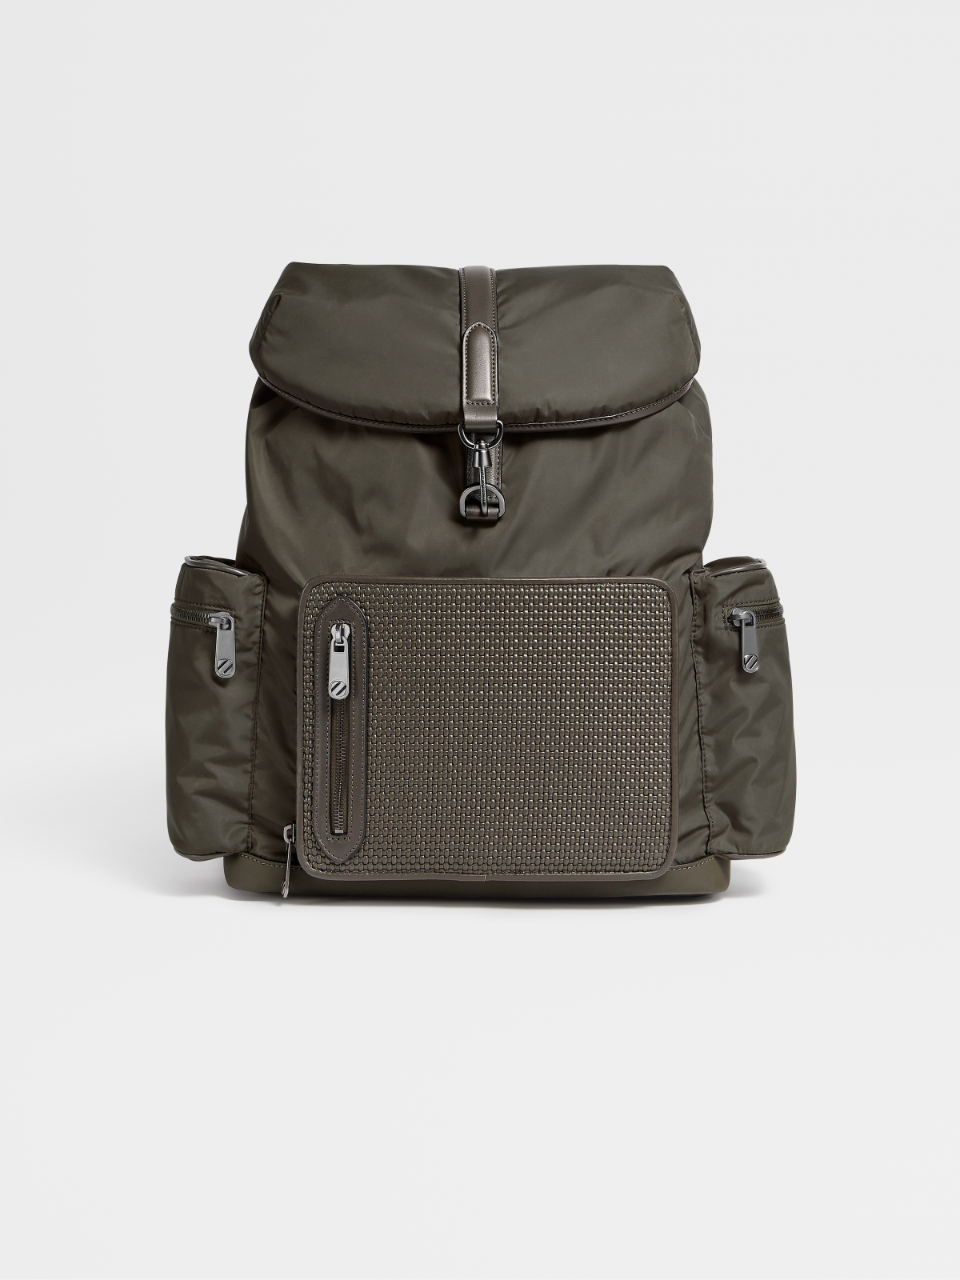 Mochila PELLETESSUTA™ Special Backpack de Nailon Verde Militar